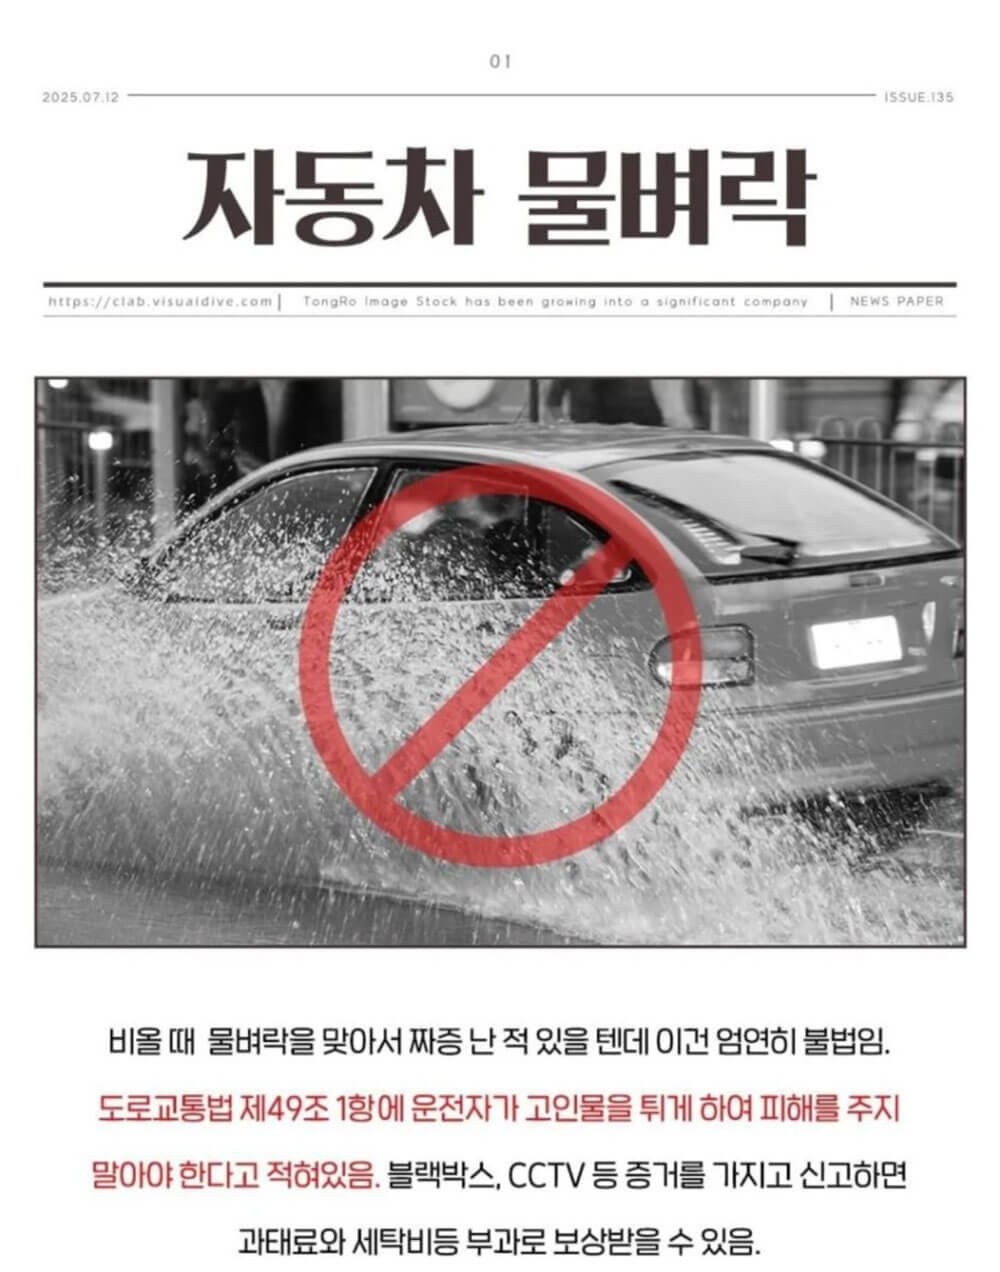 한국에서 의외로 불법인 것들